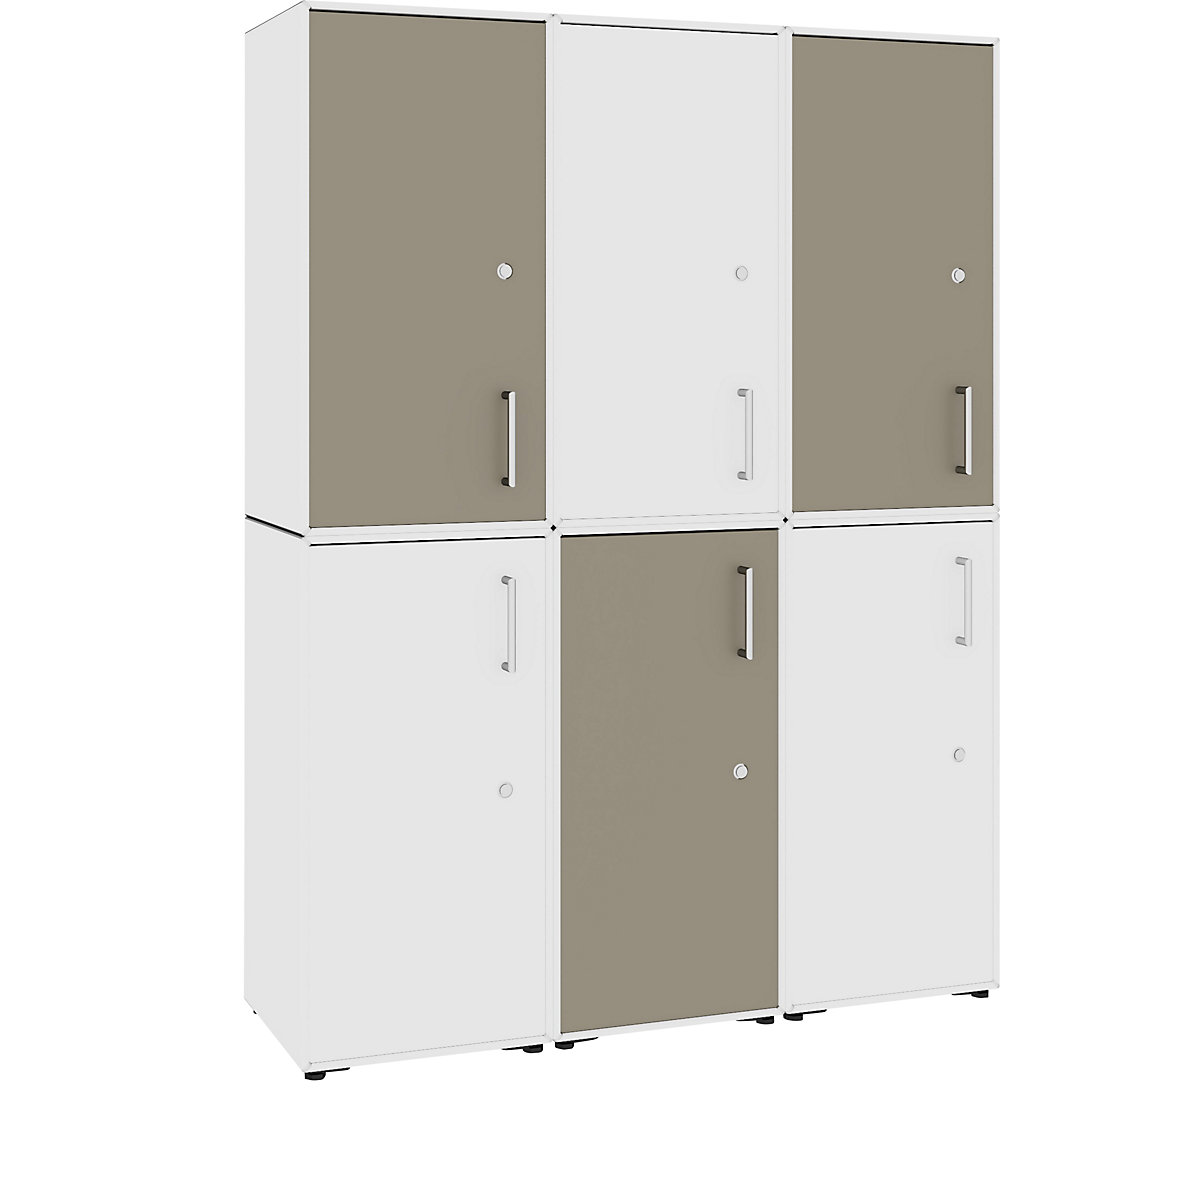 Combinación de puertas batientes – mauser, 6 puertas, detrás de cada una 2 compartimentos, blanco puro / gris beige-6